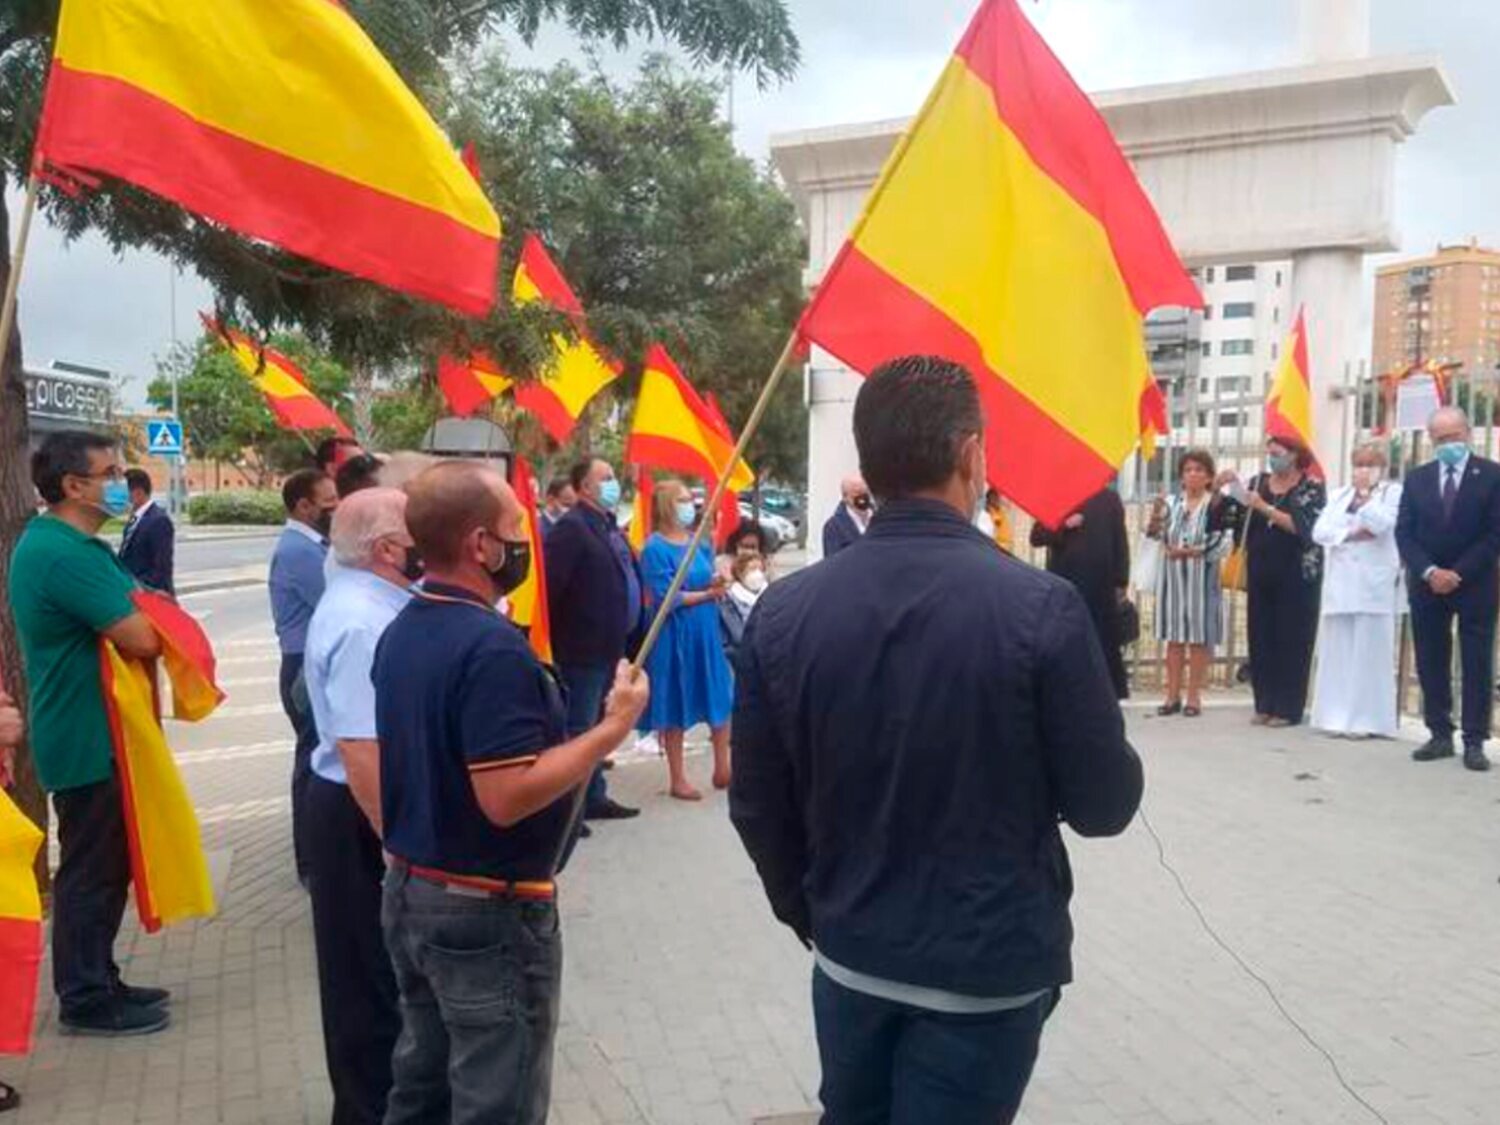 El alcalde de Málaga (PP) participa en un acto con franquistas en un homenaje a las "víctimas del bando nacional"